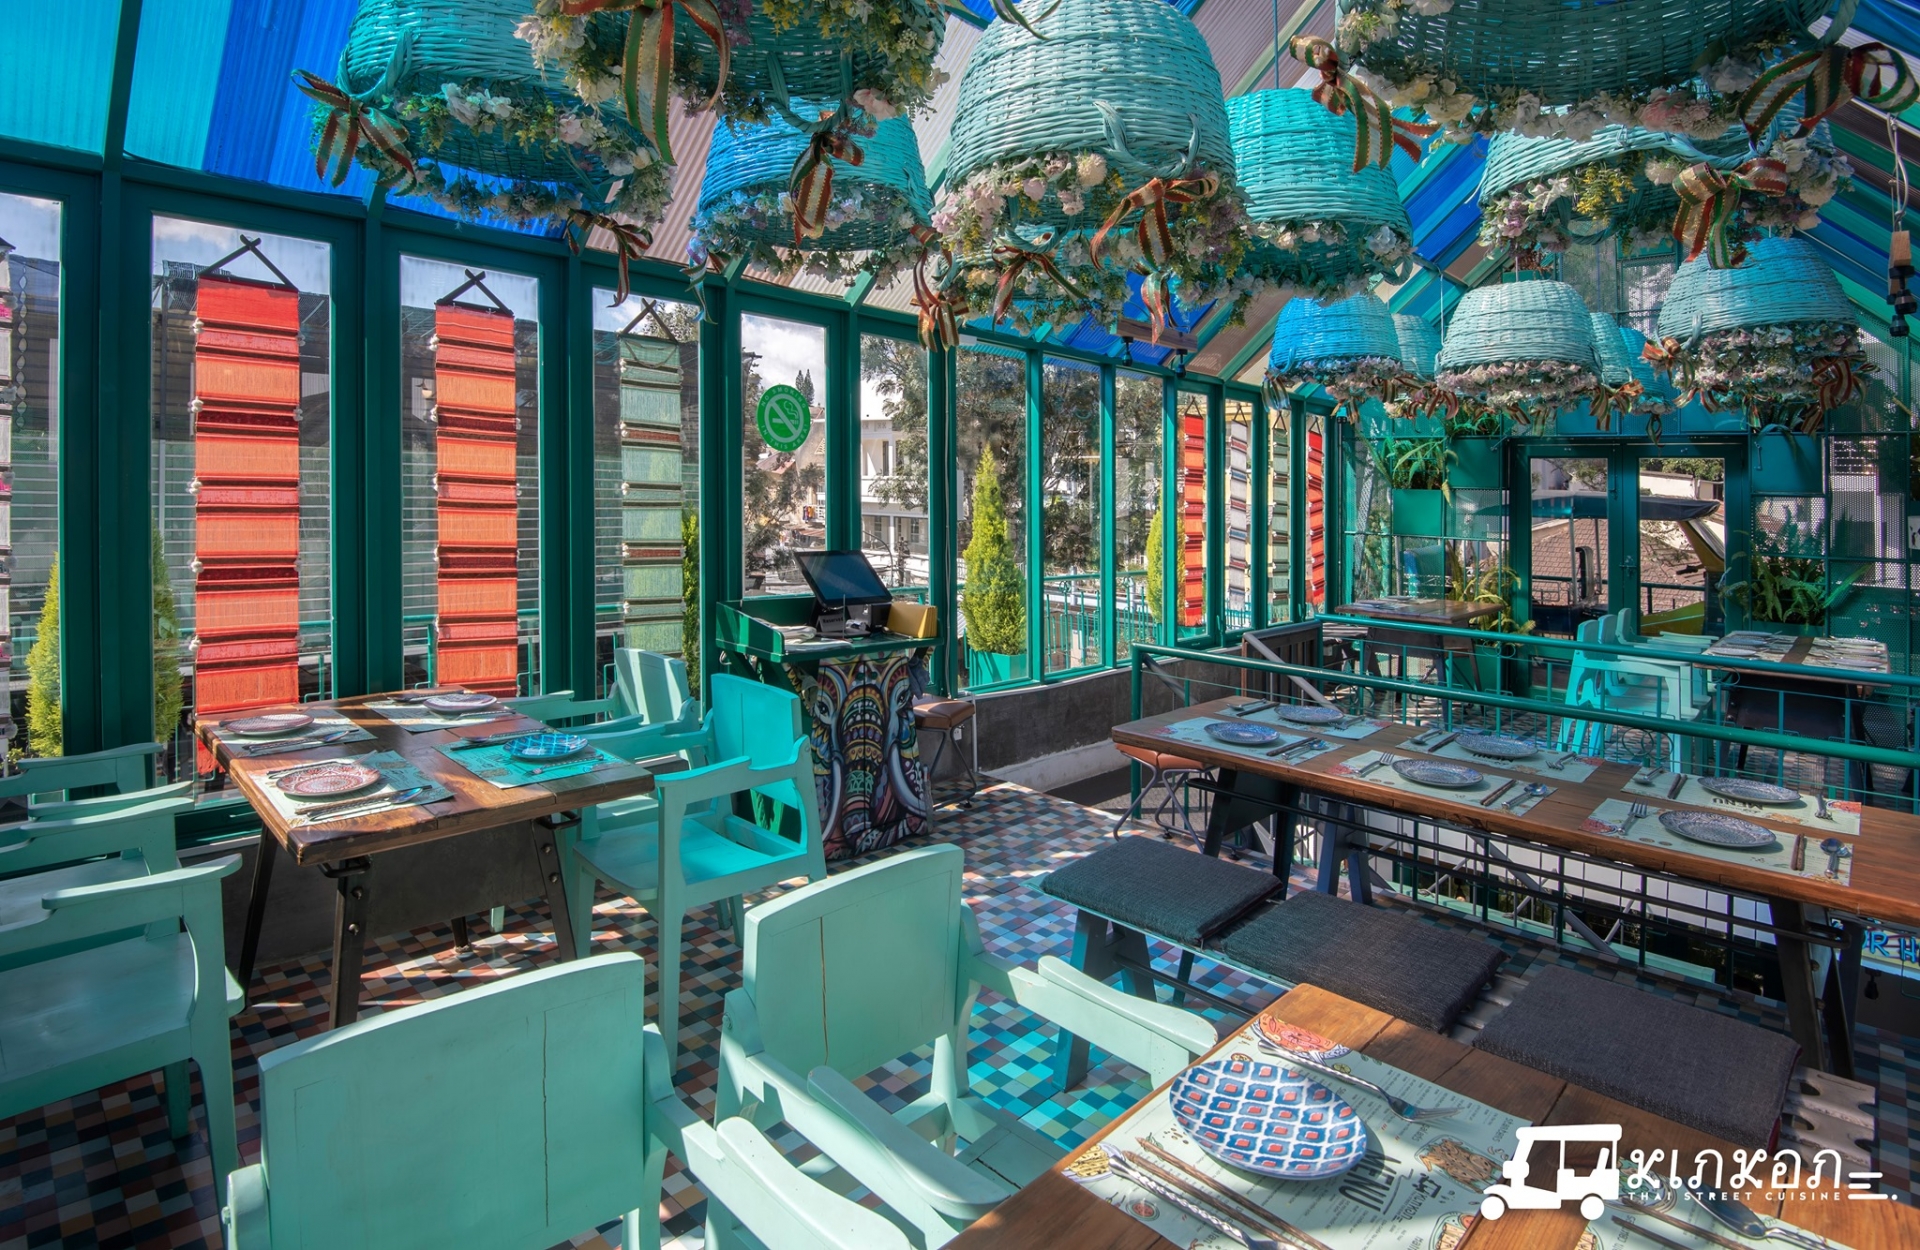 Nhà hàng có thiết kế độc lạ khi sử dụng gam màu xanh làm chủ đạo. Nguồn: KIN KON Thai Street Cuisine